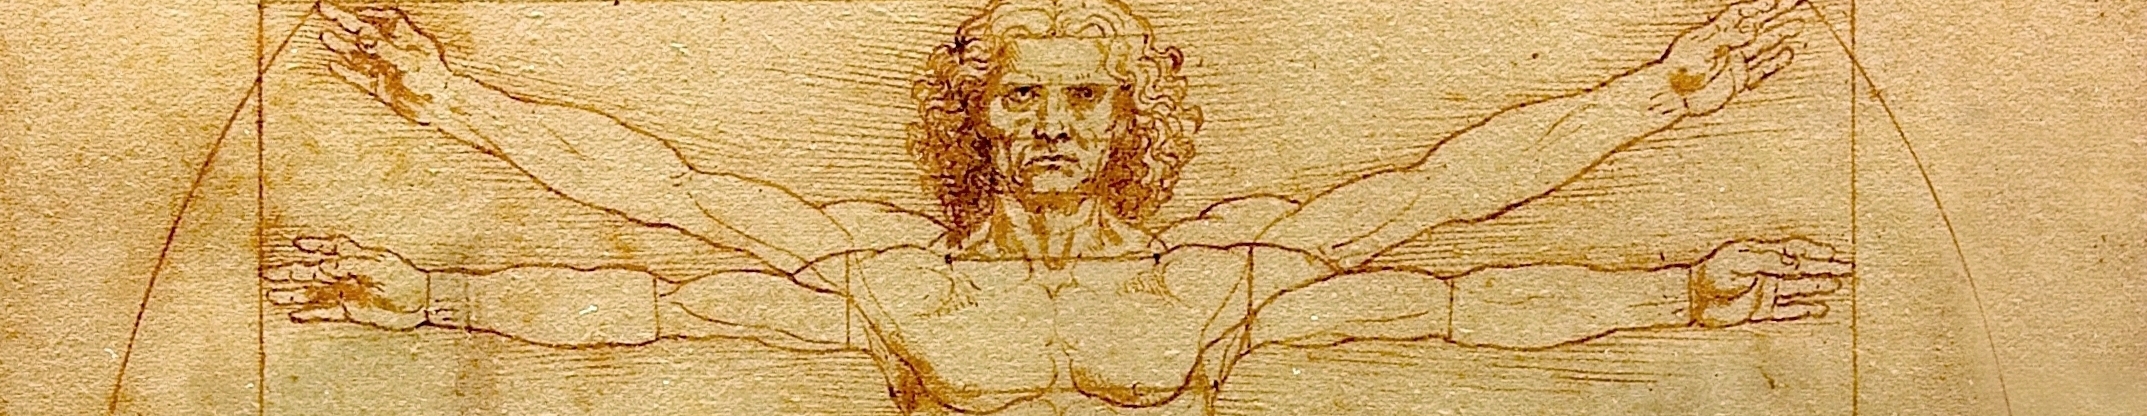 Da Vinci man